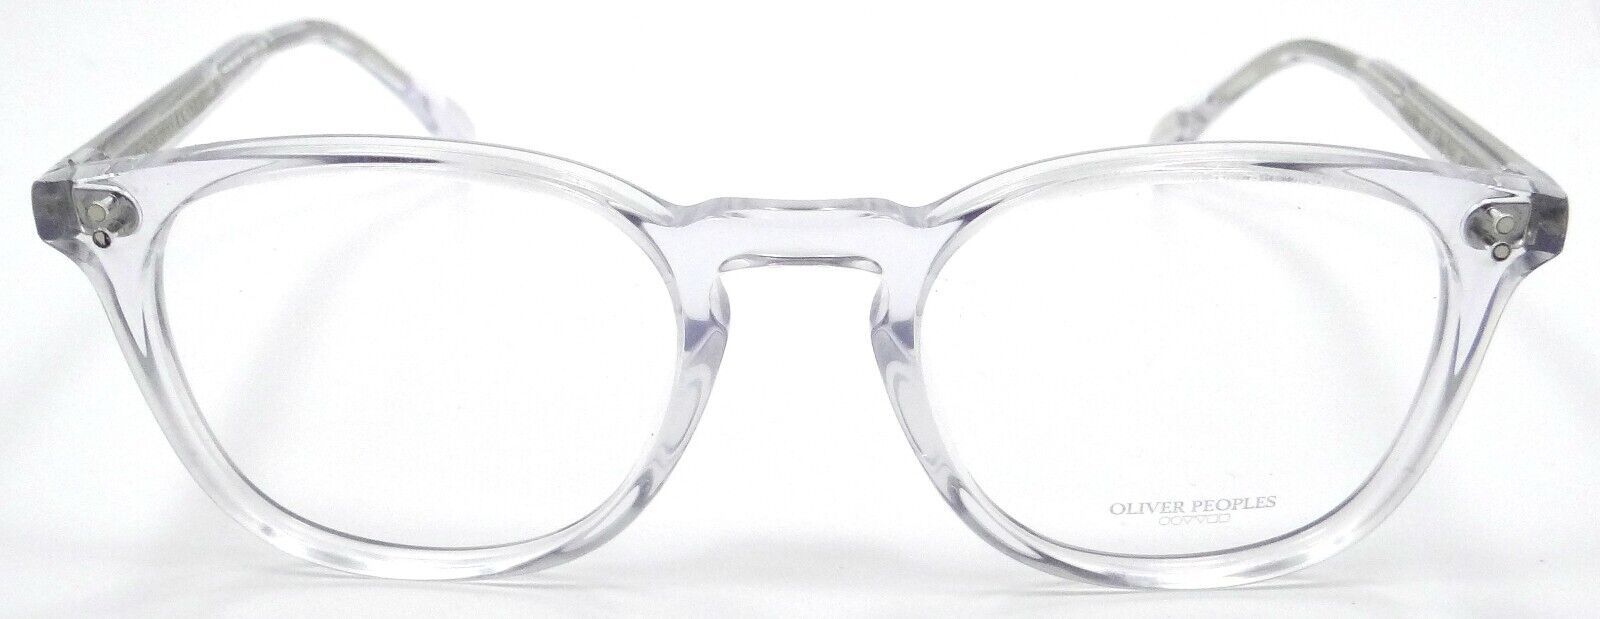 Oliver Peoples Eyeglasses Frames OV 5298U 1101 49-20-145 Finley Esq Crystal-827934468740-classypw.com-2